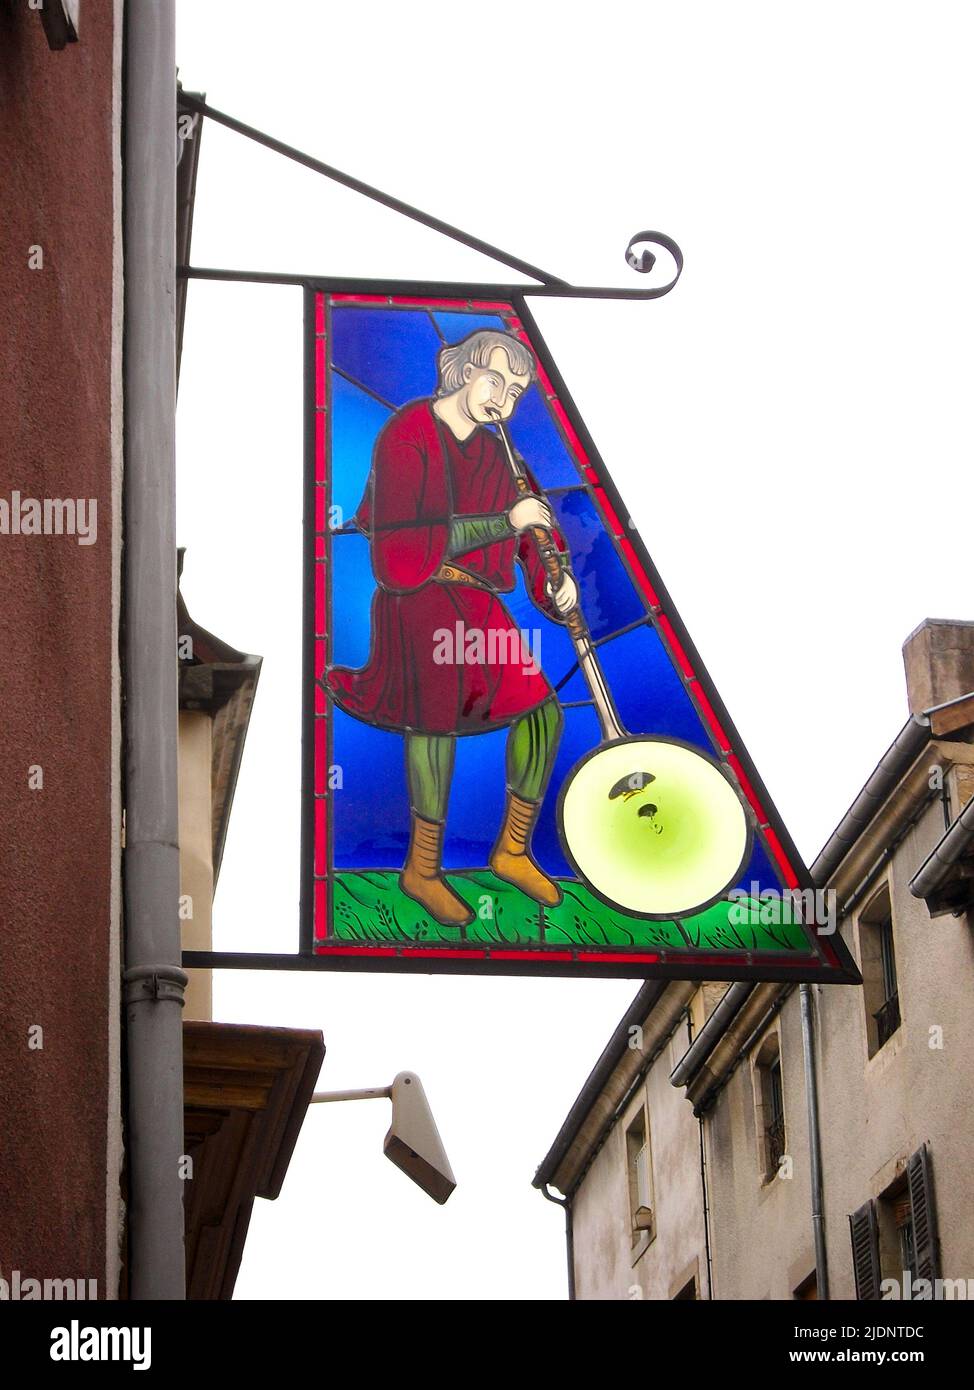 L'artisanat de soufflage de verre promu sur un panneau dans la ville française médiévale de Cluny, France Banque D'Images